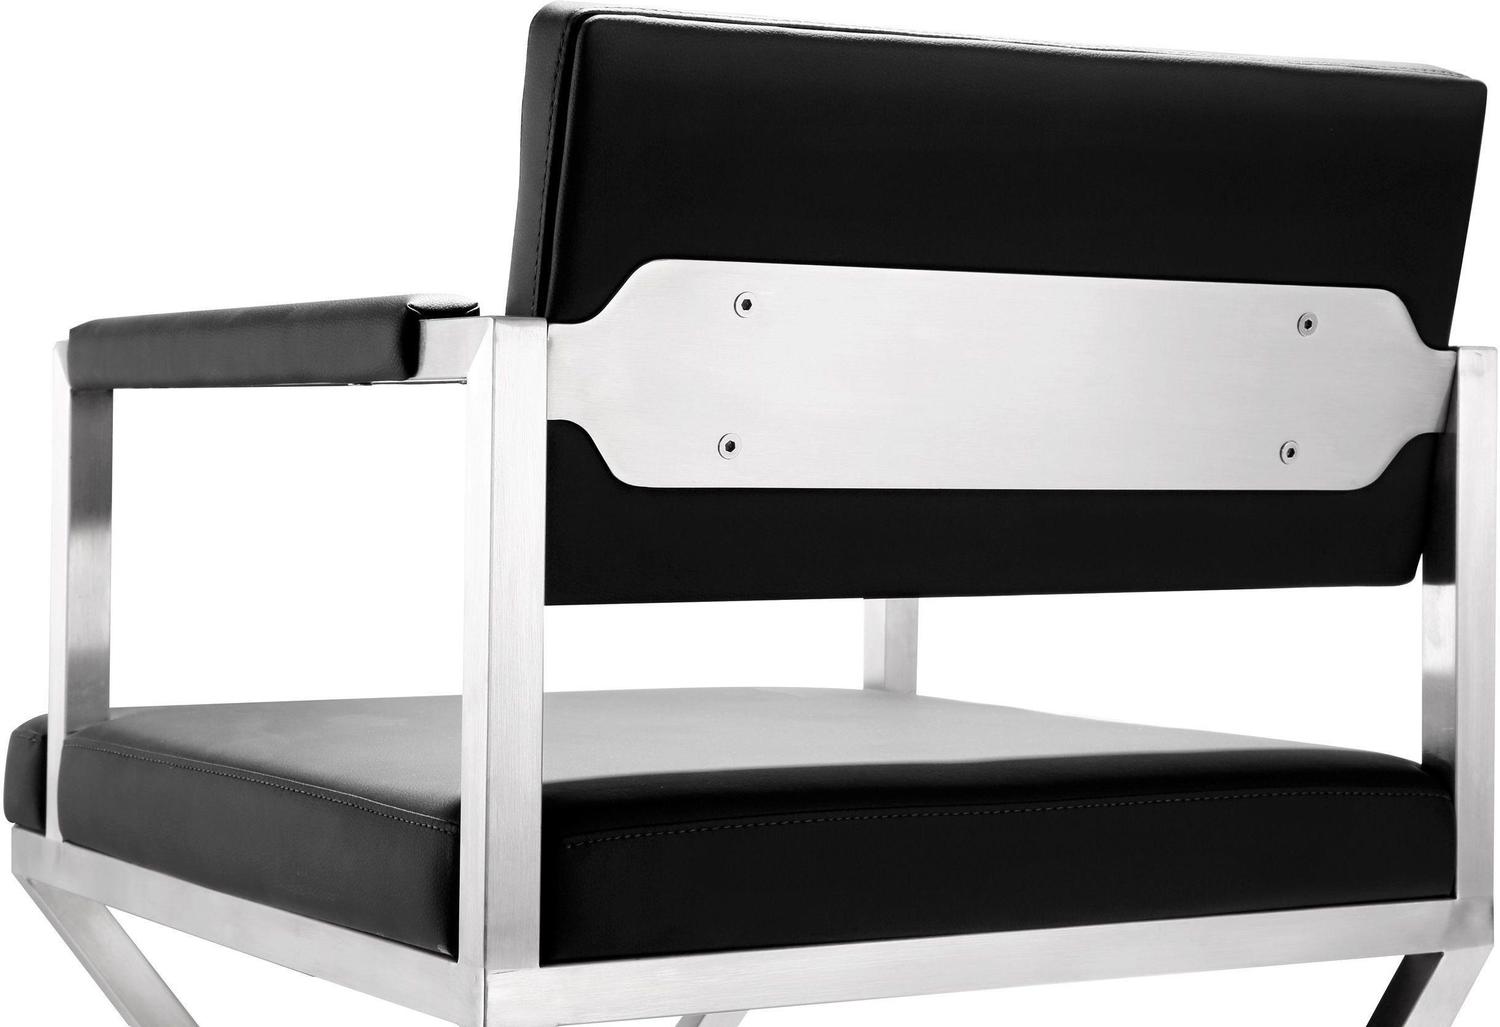 2 stools Tov Furniture Stools Black